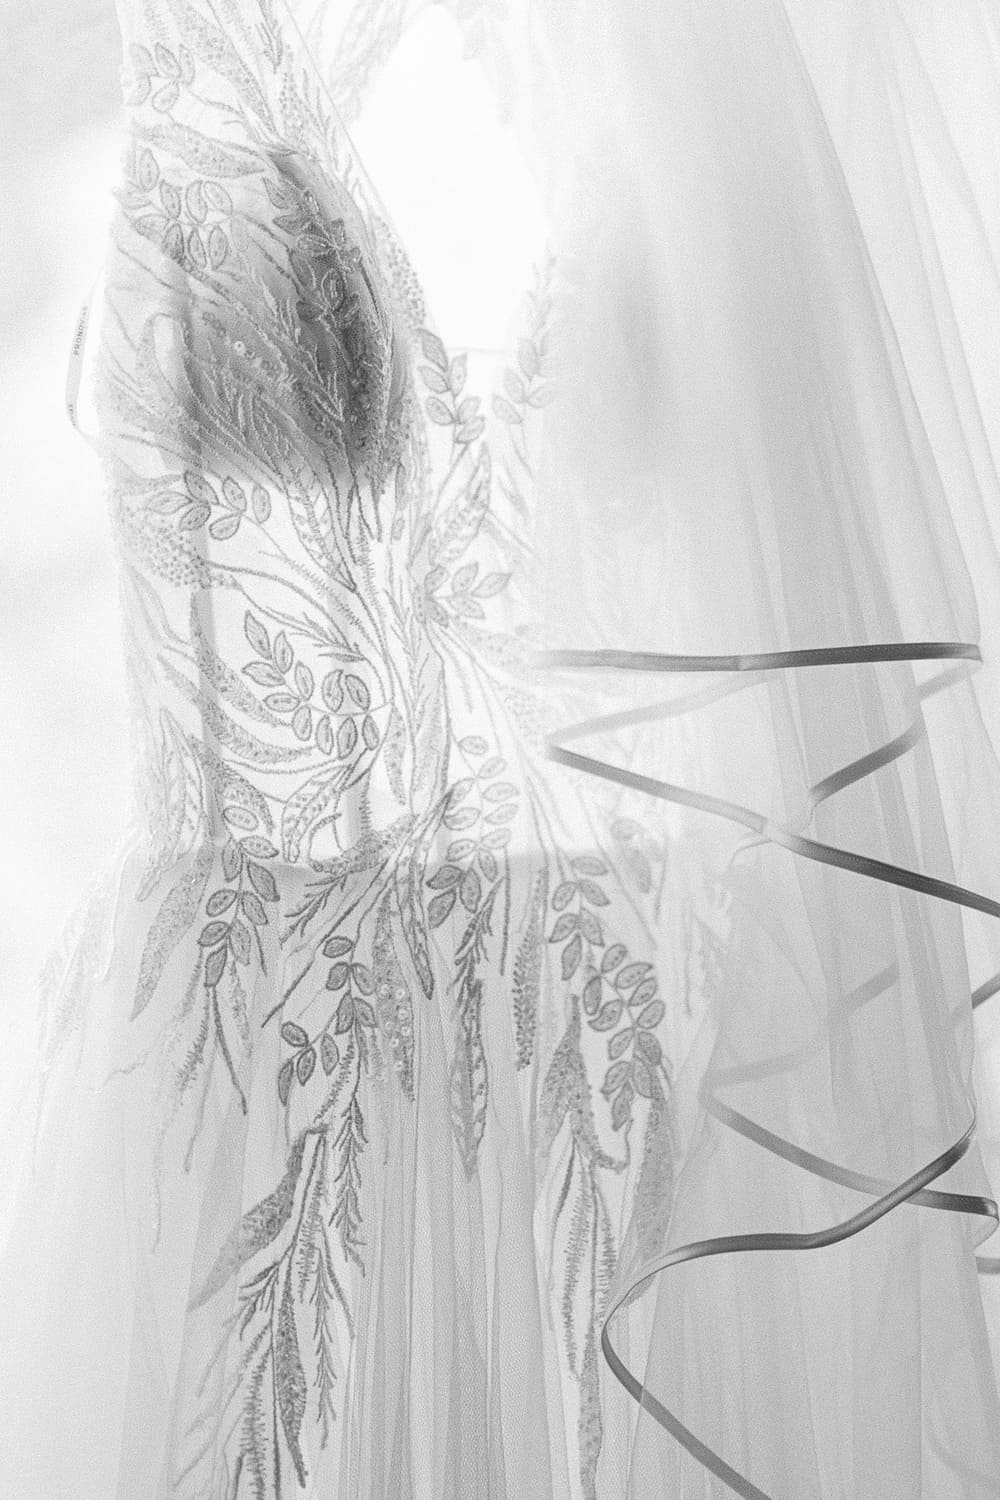 Brautkleid verziert vor Fenster schwarz weiß